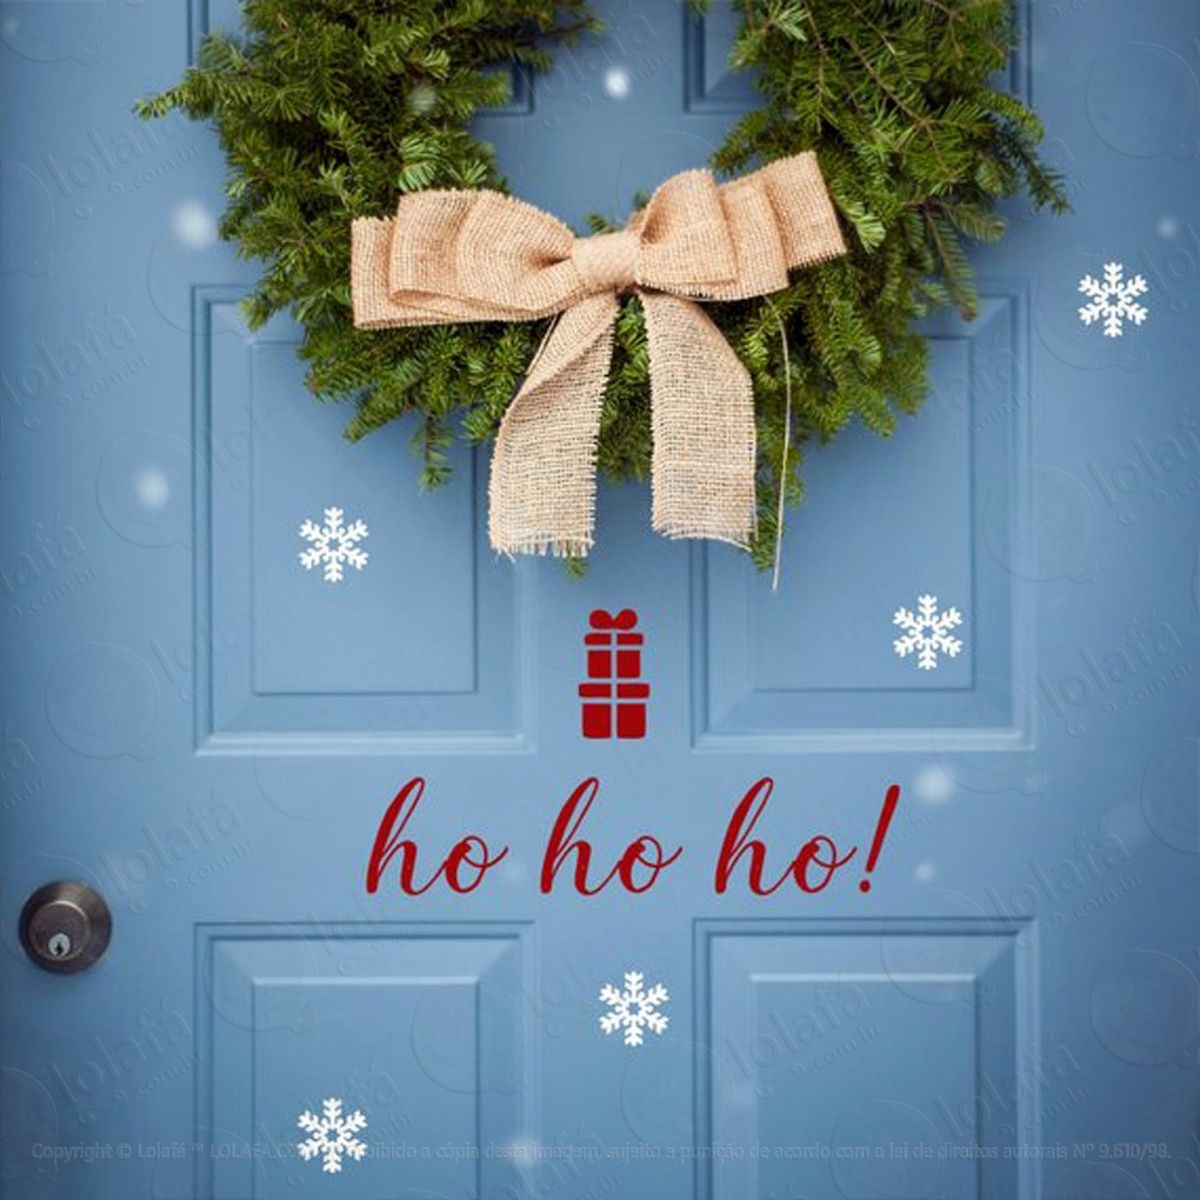 porta ho ho ho adesivo de natal para vitrine, parede, porta de vidro - decoração natalina mod:194